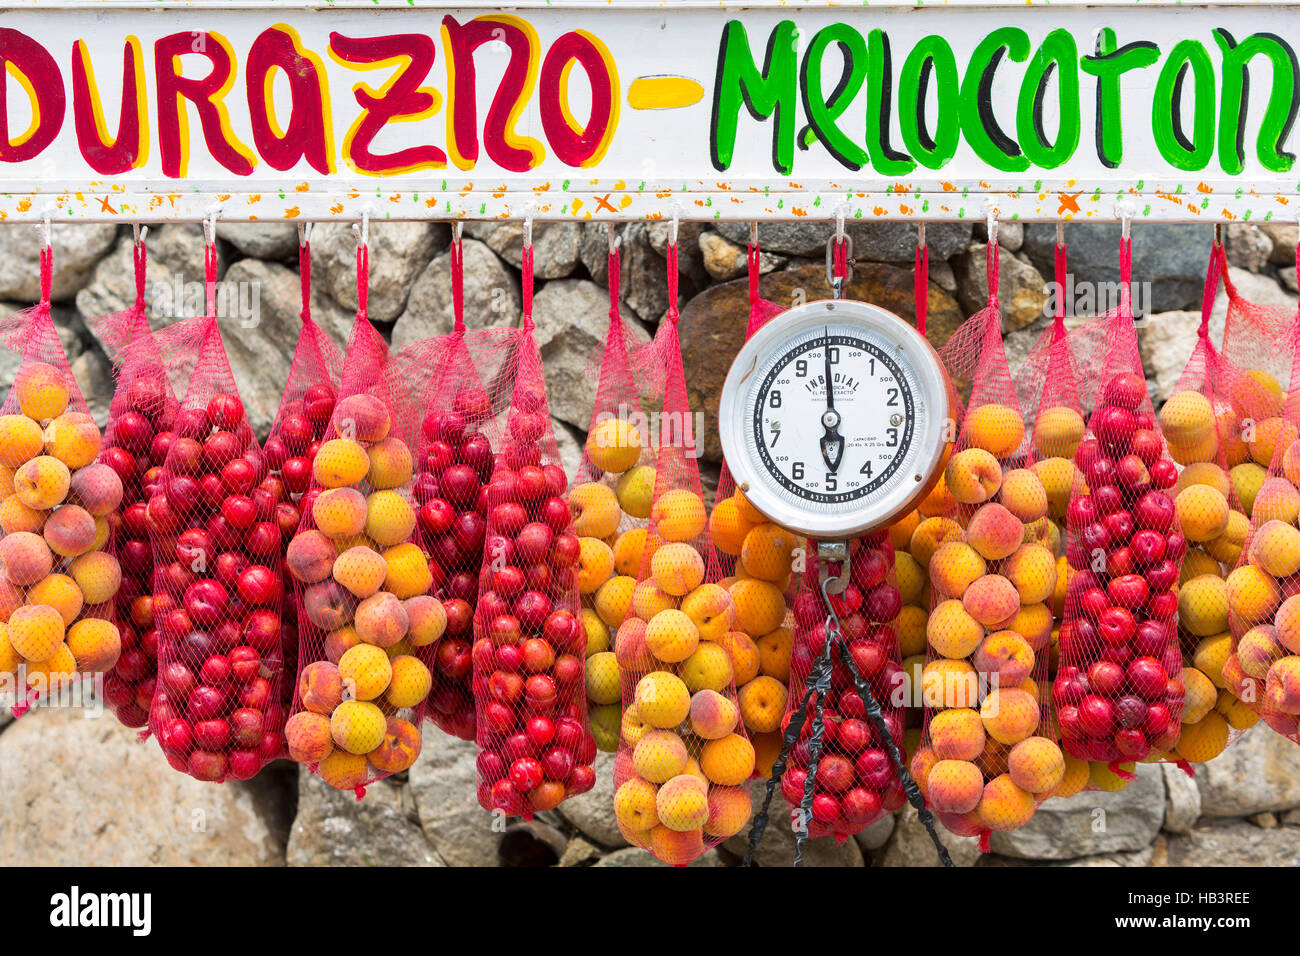 Los albaricoques frescos colgado con escala de peso en el mercado de frutas al aire libre Foto de stock